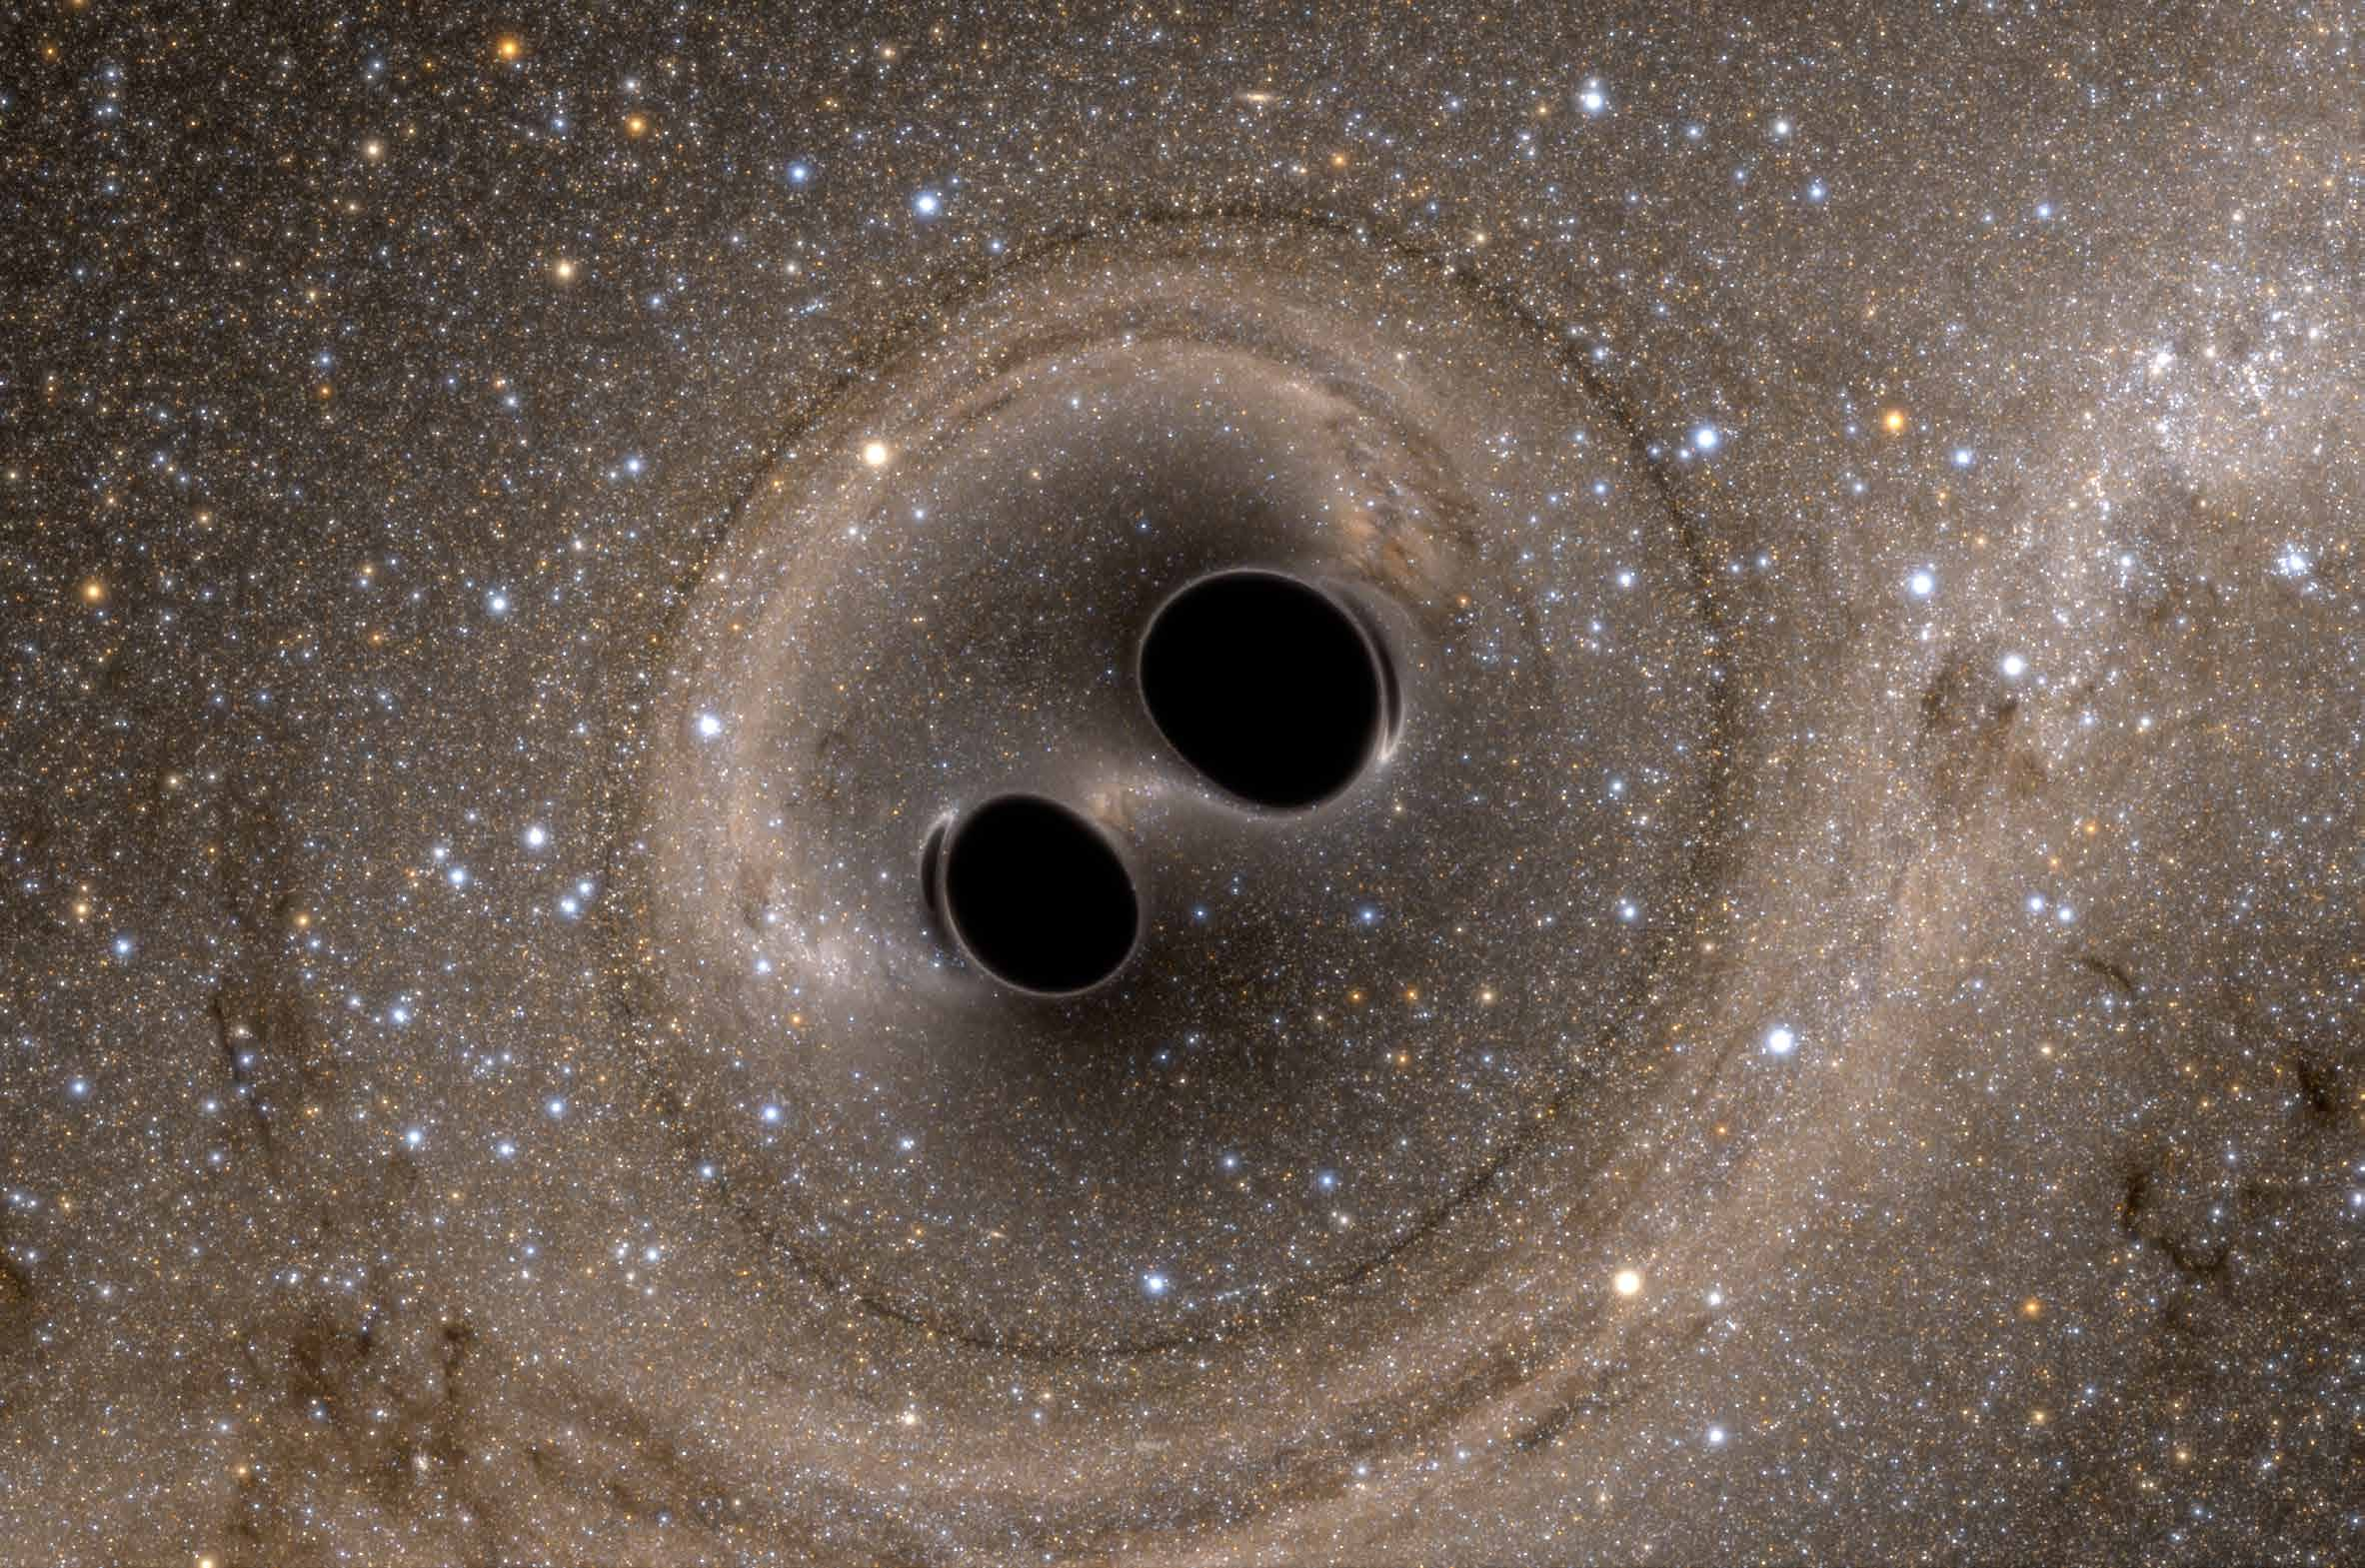 onde gravitazionali emesse. I due buchi neri, prima di fondersi, hanno spiraleggiato, per poi scontrarsi a una velocità di circa 5.